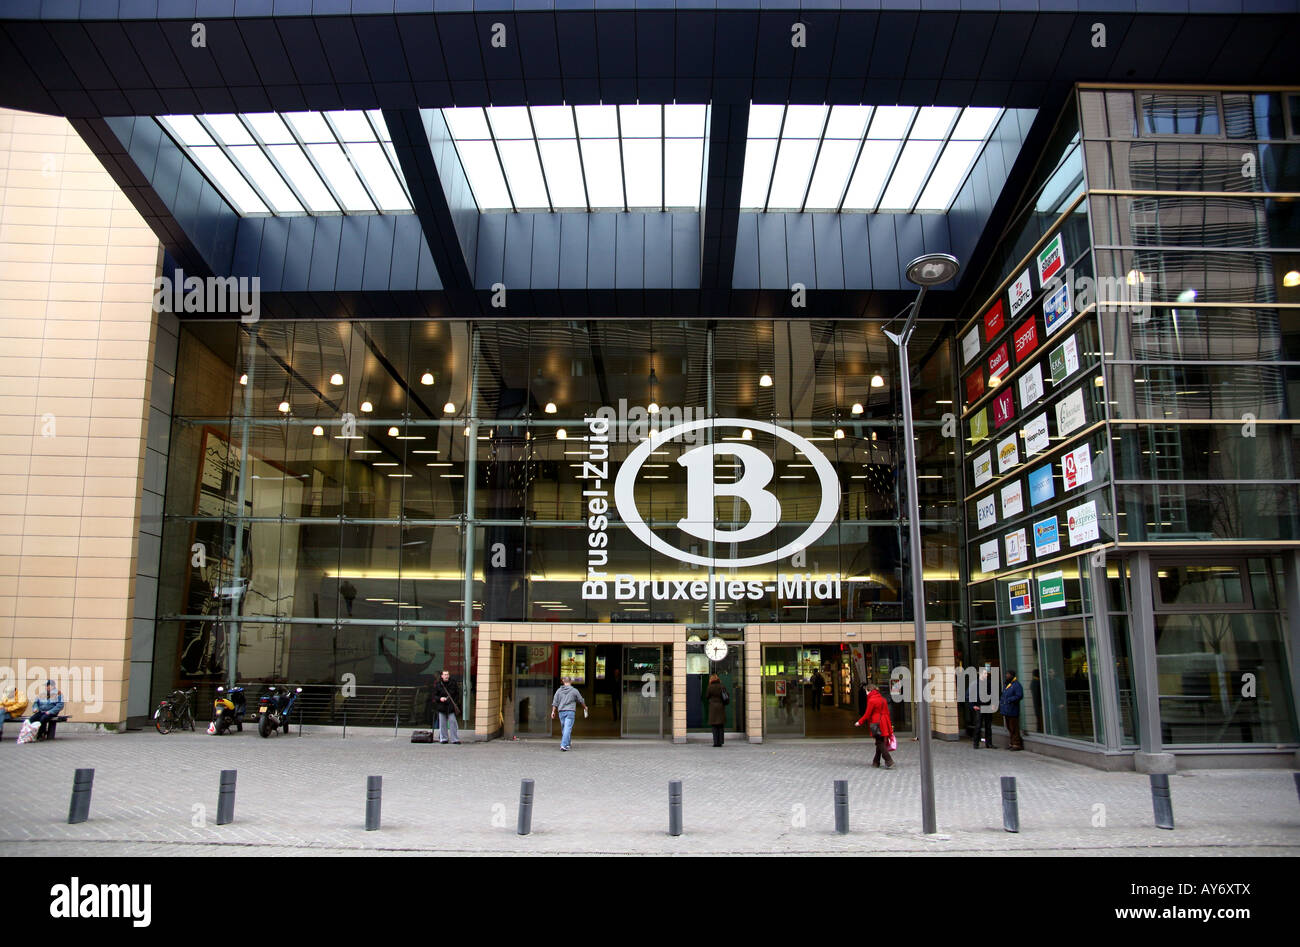 Brüssel midi station -Fotos und -Bildmaterial in hoher Auflösung – Alamy